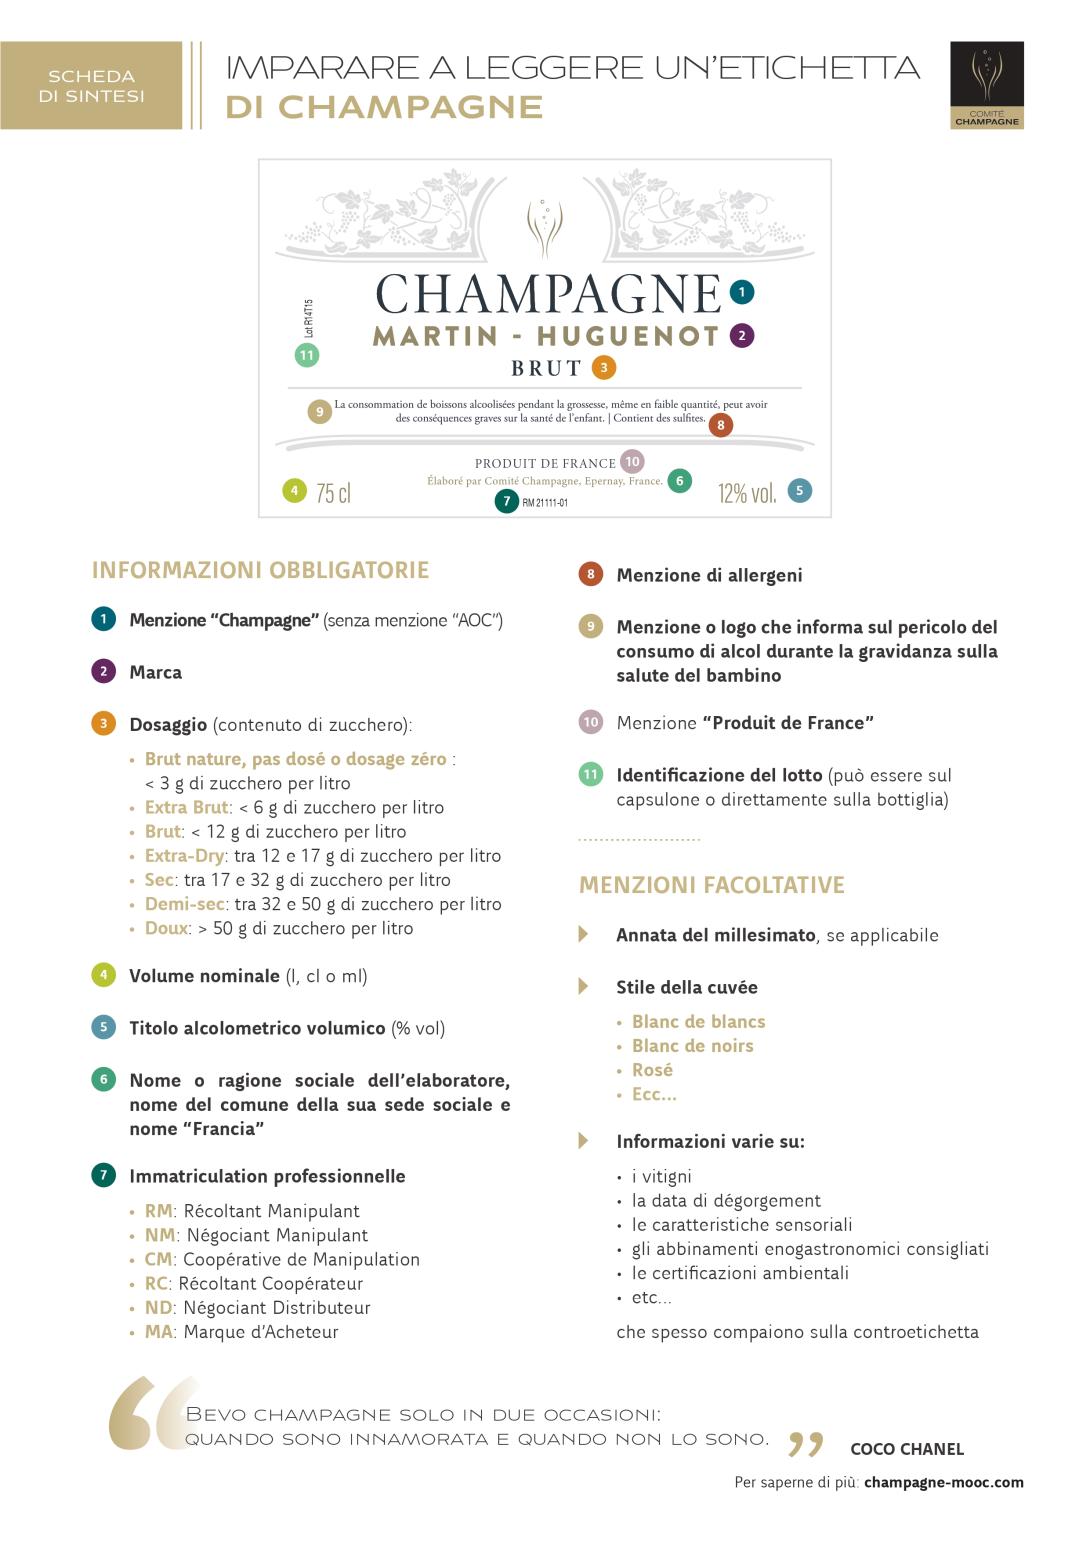 Comprendere le etichette dello champagne